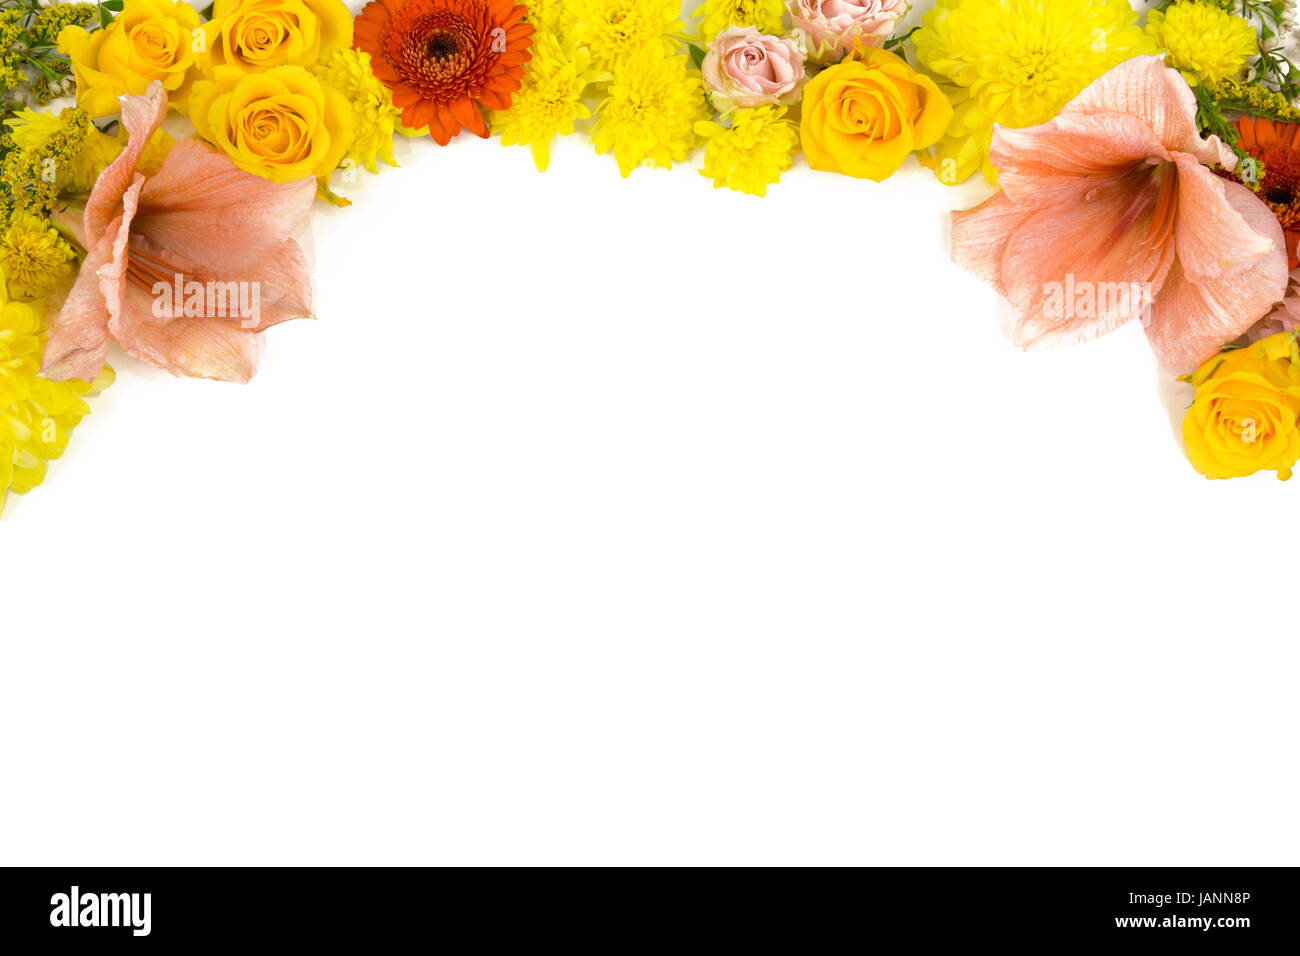 Einzelne Blüten, Rosen, Amaryllis, Chrysanthemen als Bildrahmen Stock Photo